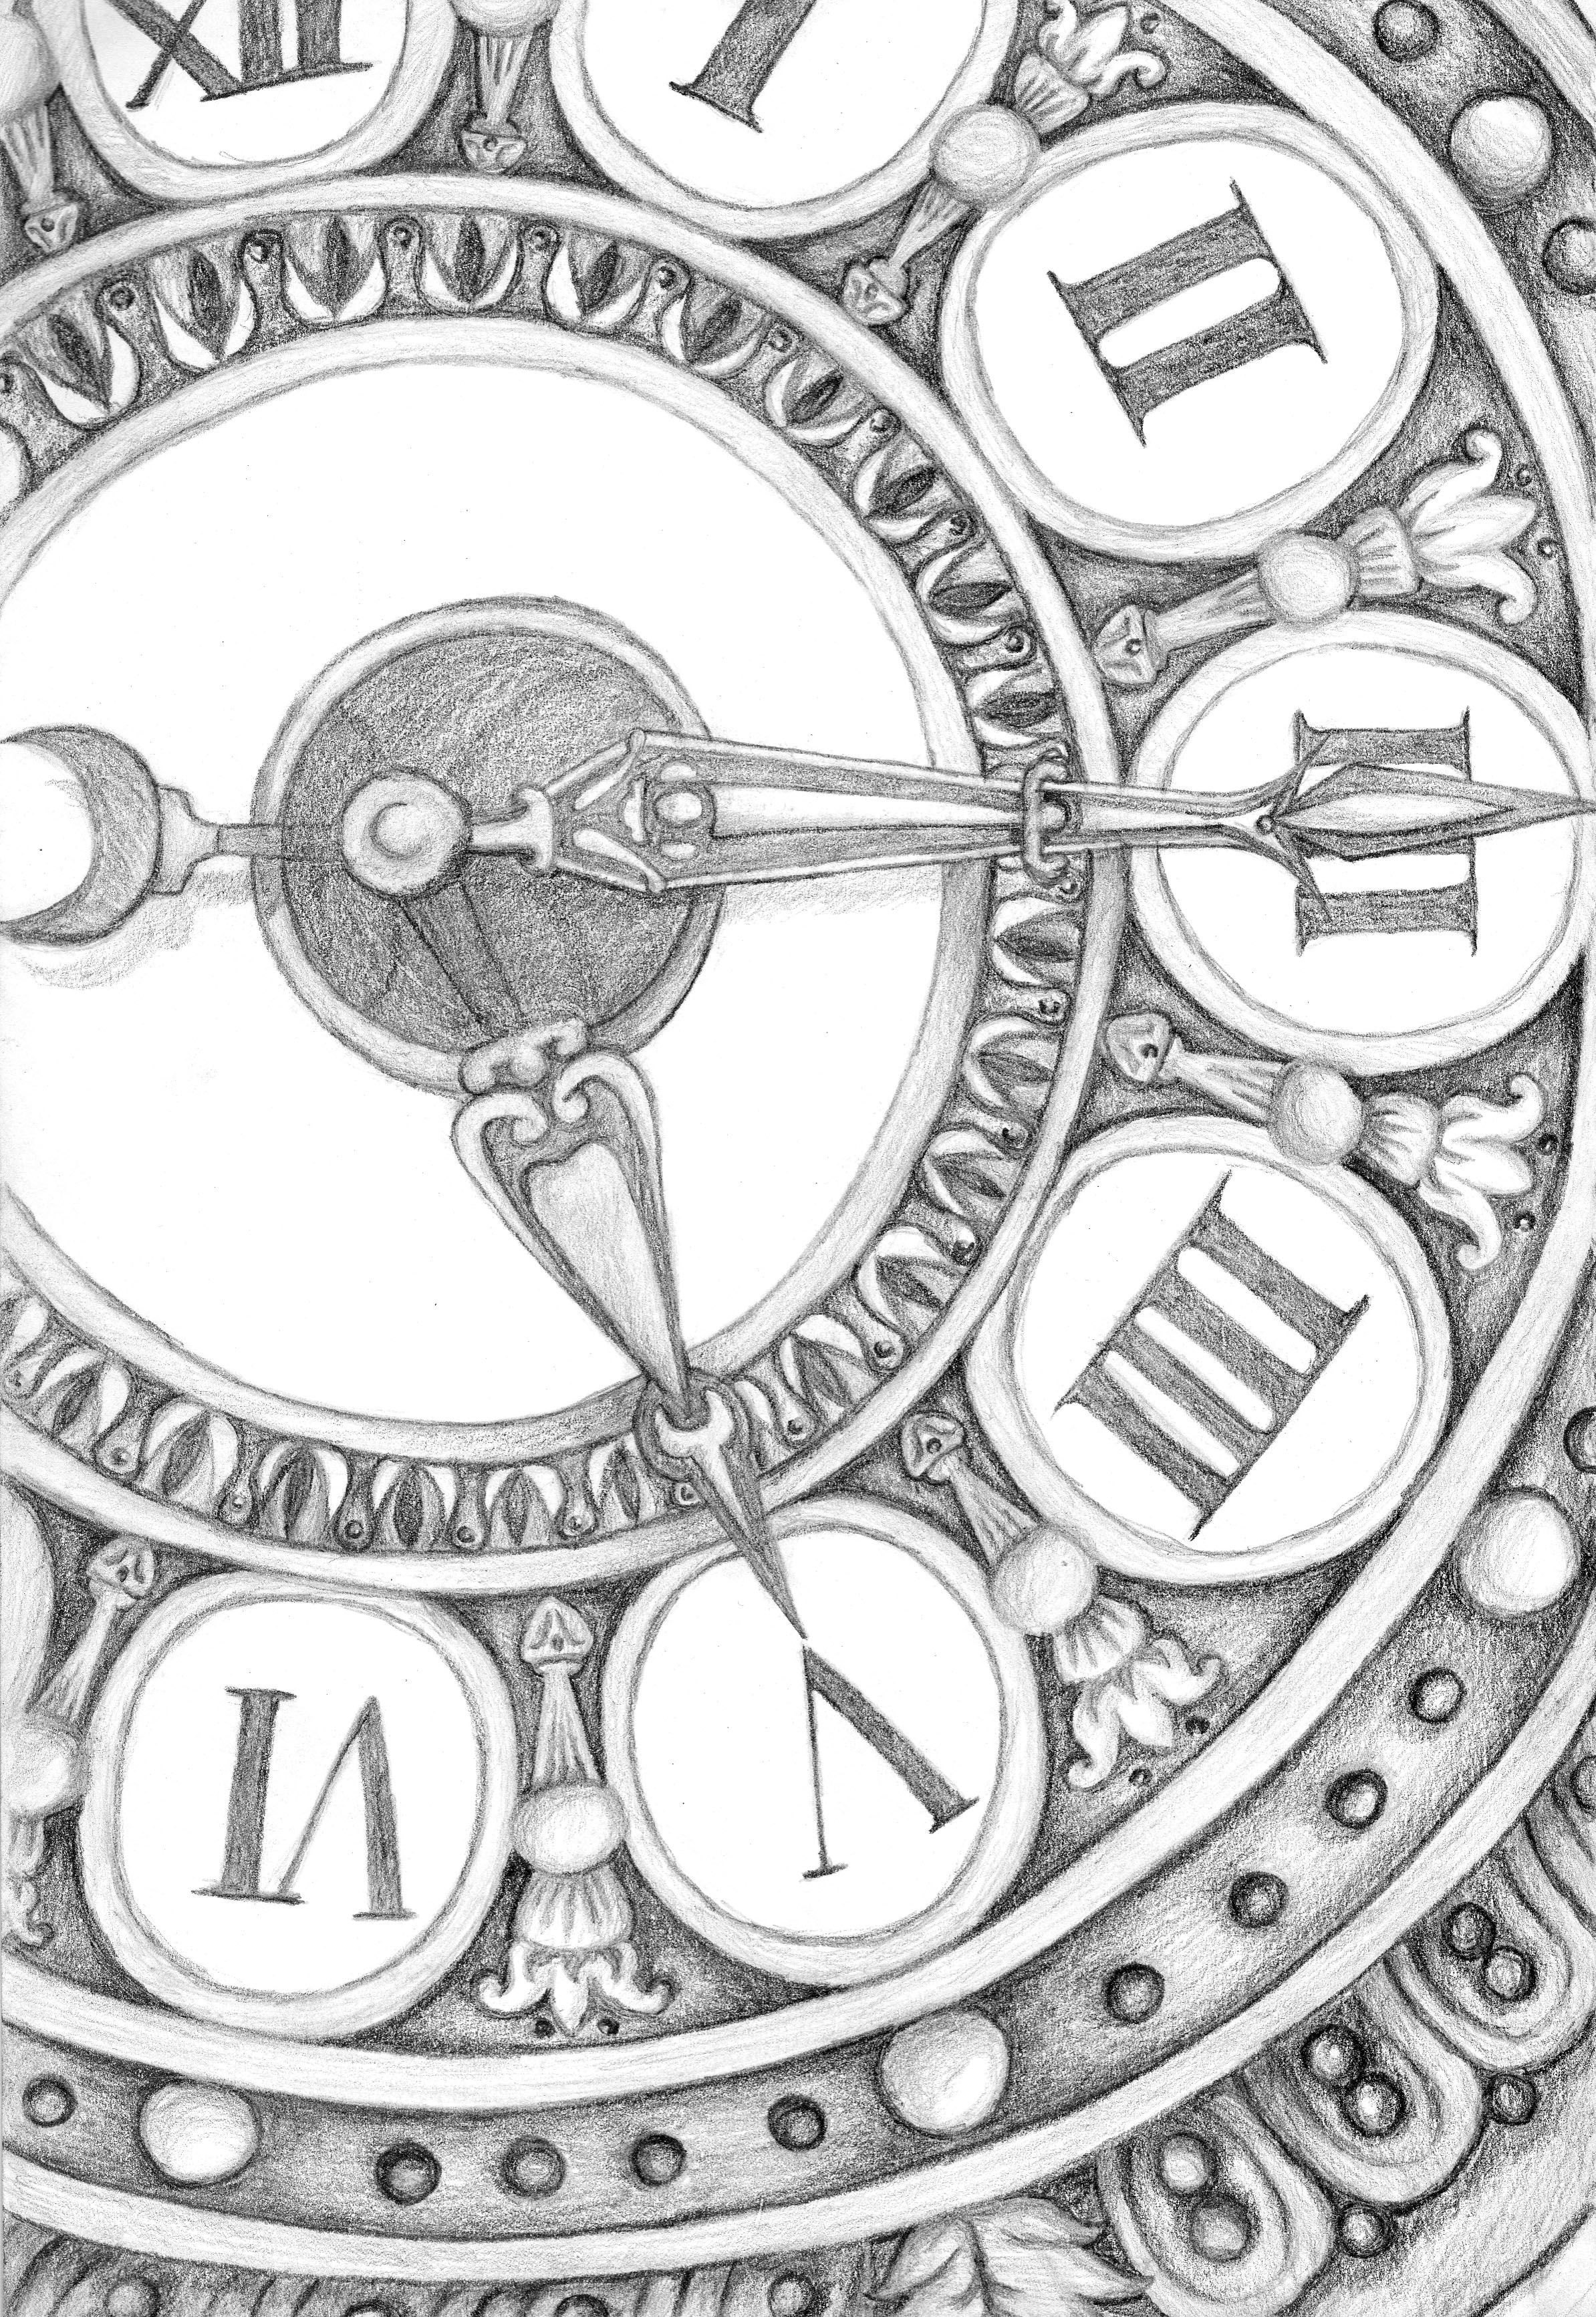 Часы нарисованный циферблат. Эскизы старинных часов. Часы эскиз. Рисунки старинных часов. Часы гравюра.